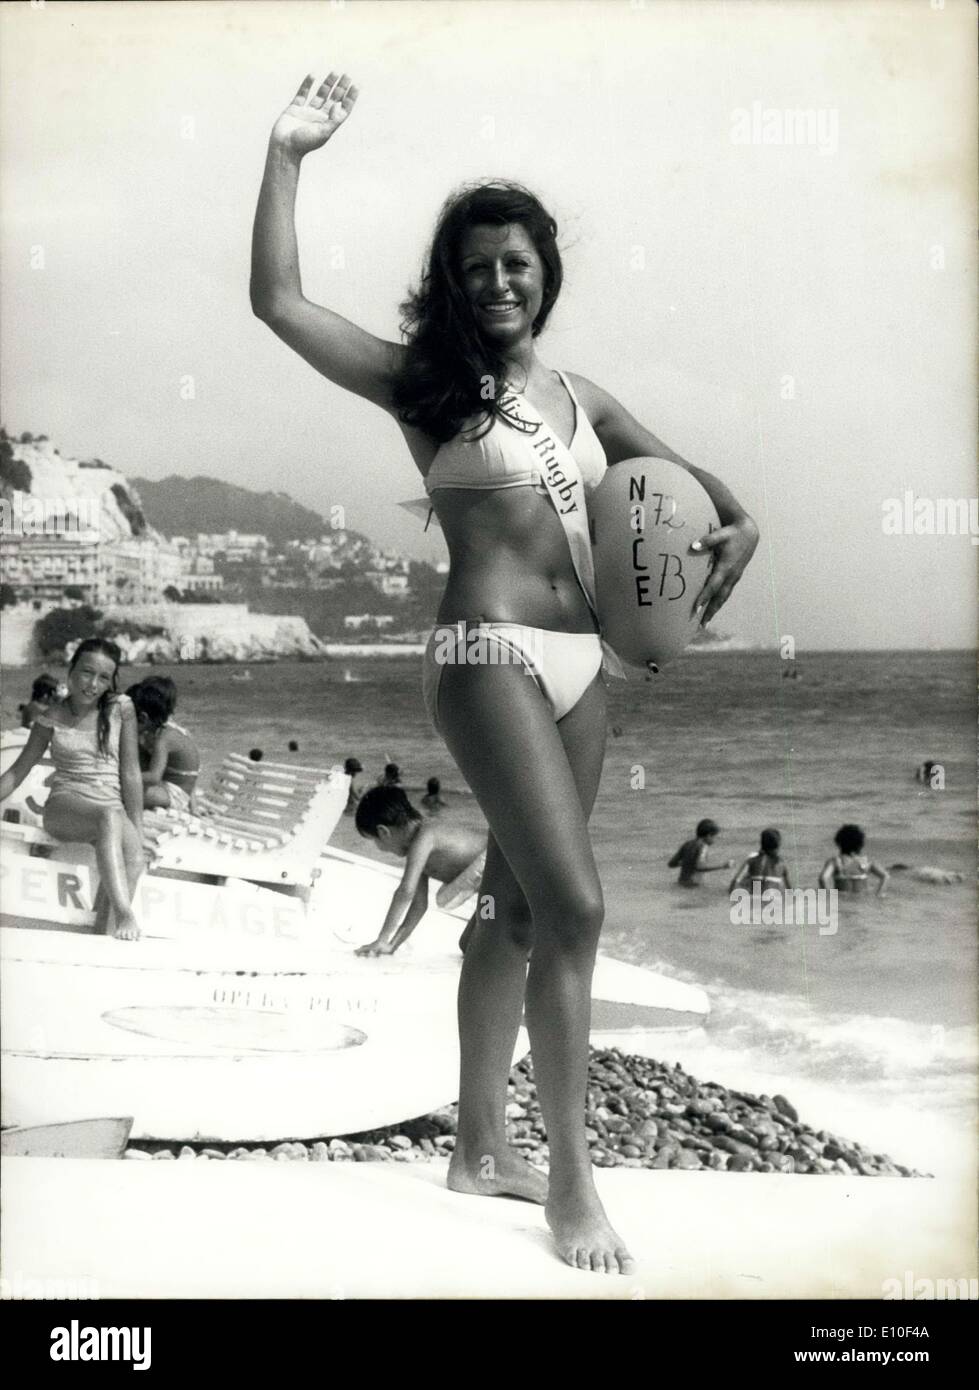 Il 29 agosto 1972 - Incontrare Miss Rugby: 20 anni di Sylvie Zucchini da Nizza è stata eletta Miss Rugby 1972. Sylvie chi è una guida turistica parla 3 lingue. La foto mostra la nuova Miss Rugby raffigurata sulla promenade des Anglais e dalla spiaggia. Foto Stock